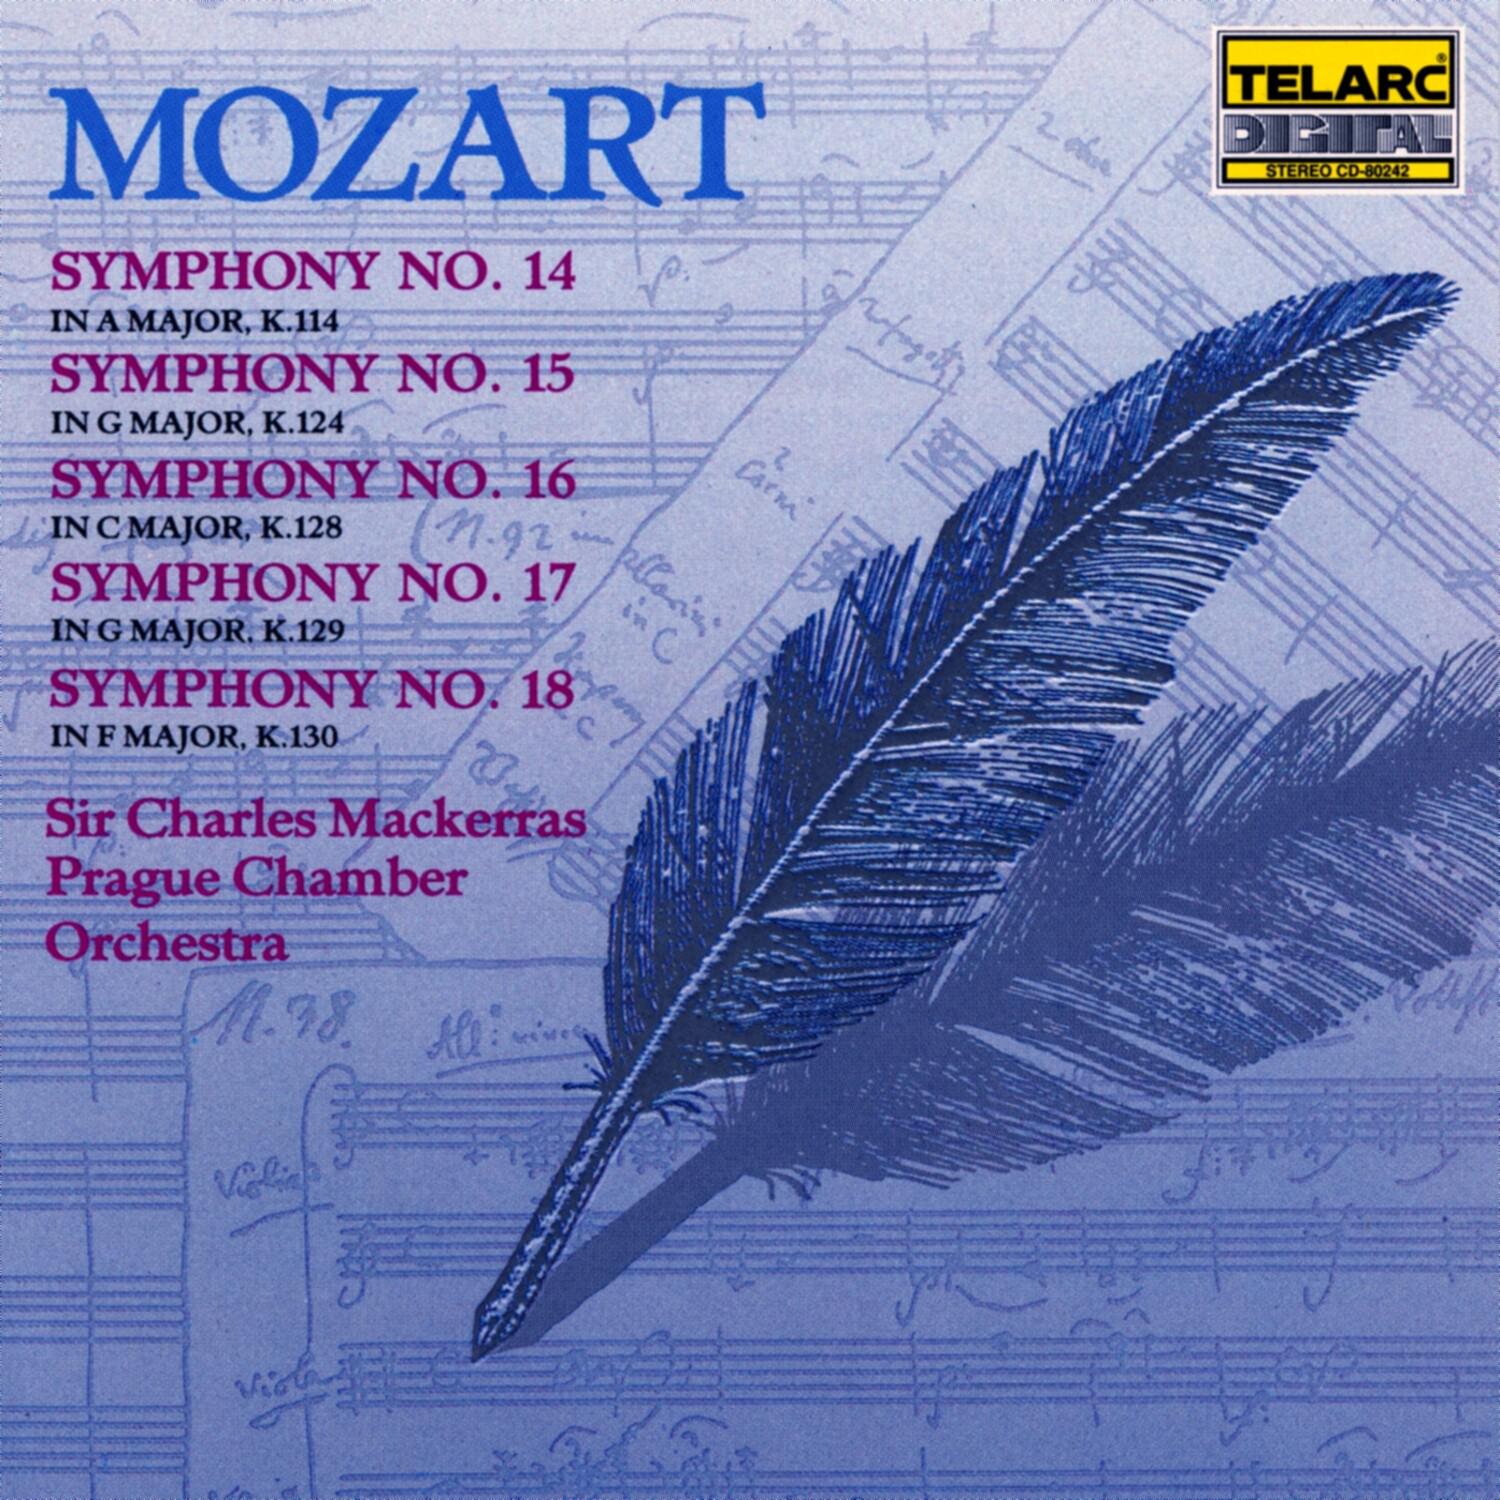 Symphony No. 14 in A major, K.114: III. Menuetto; Trio